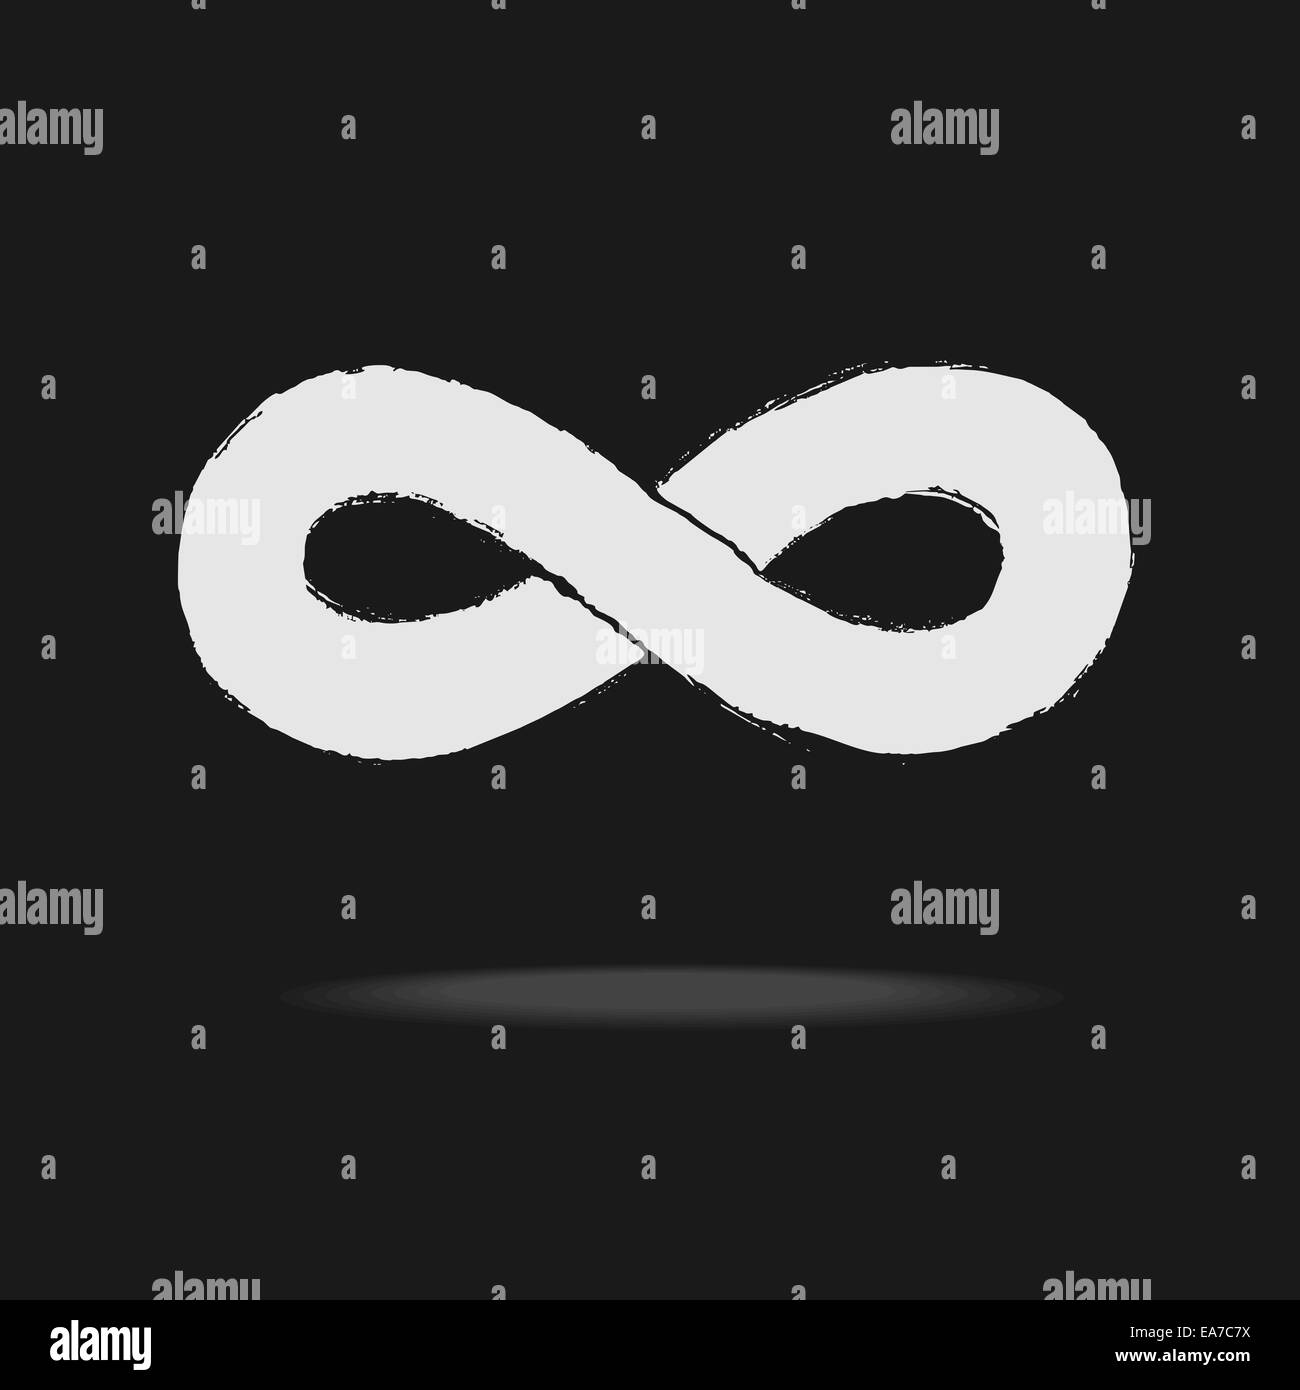 Infinity symbol Stock Photo